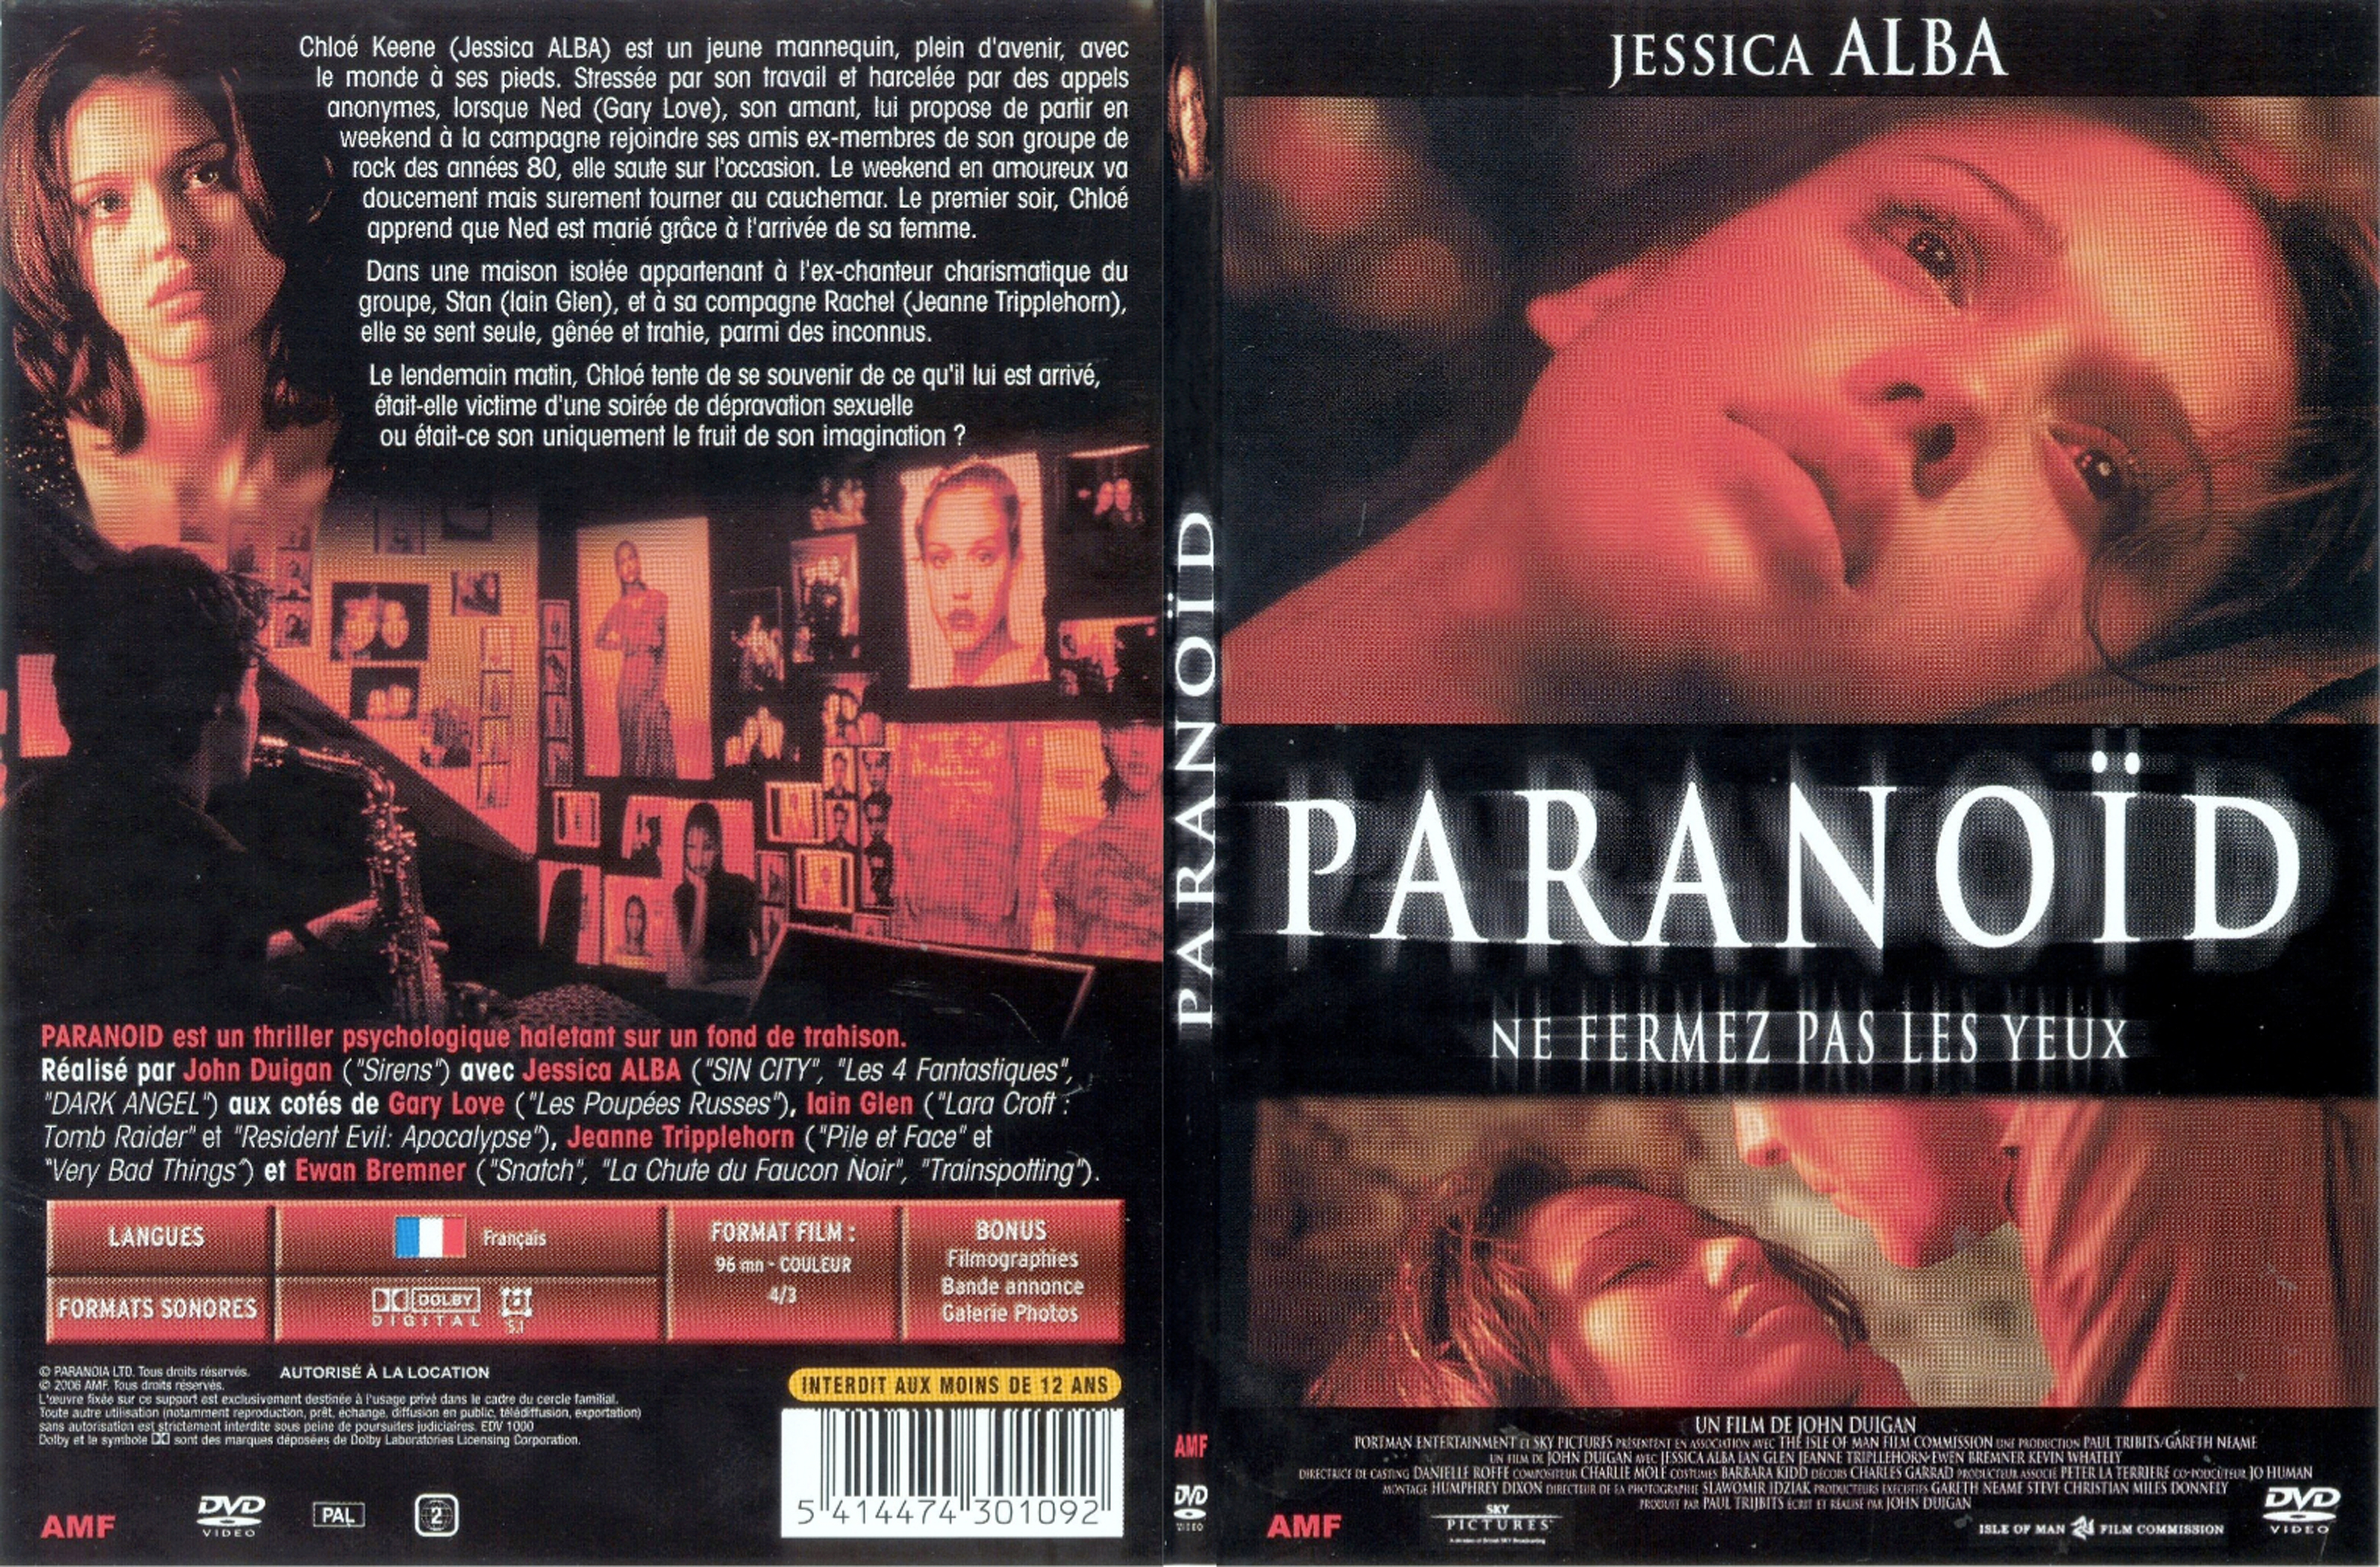 Jaquette DVD Paranoid (Jessica Alba) - SLIM